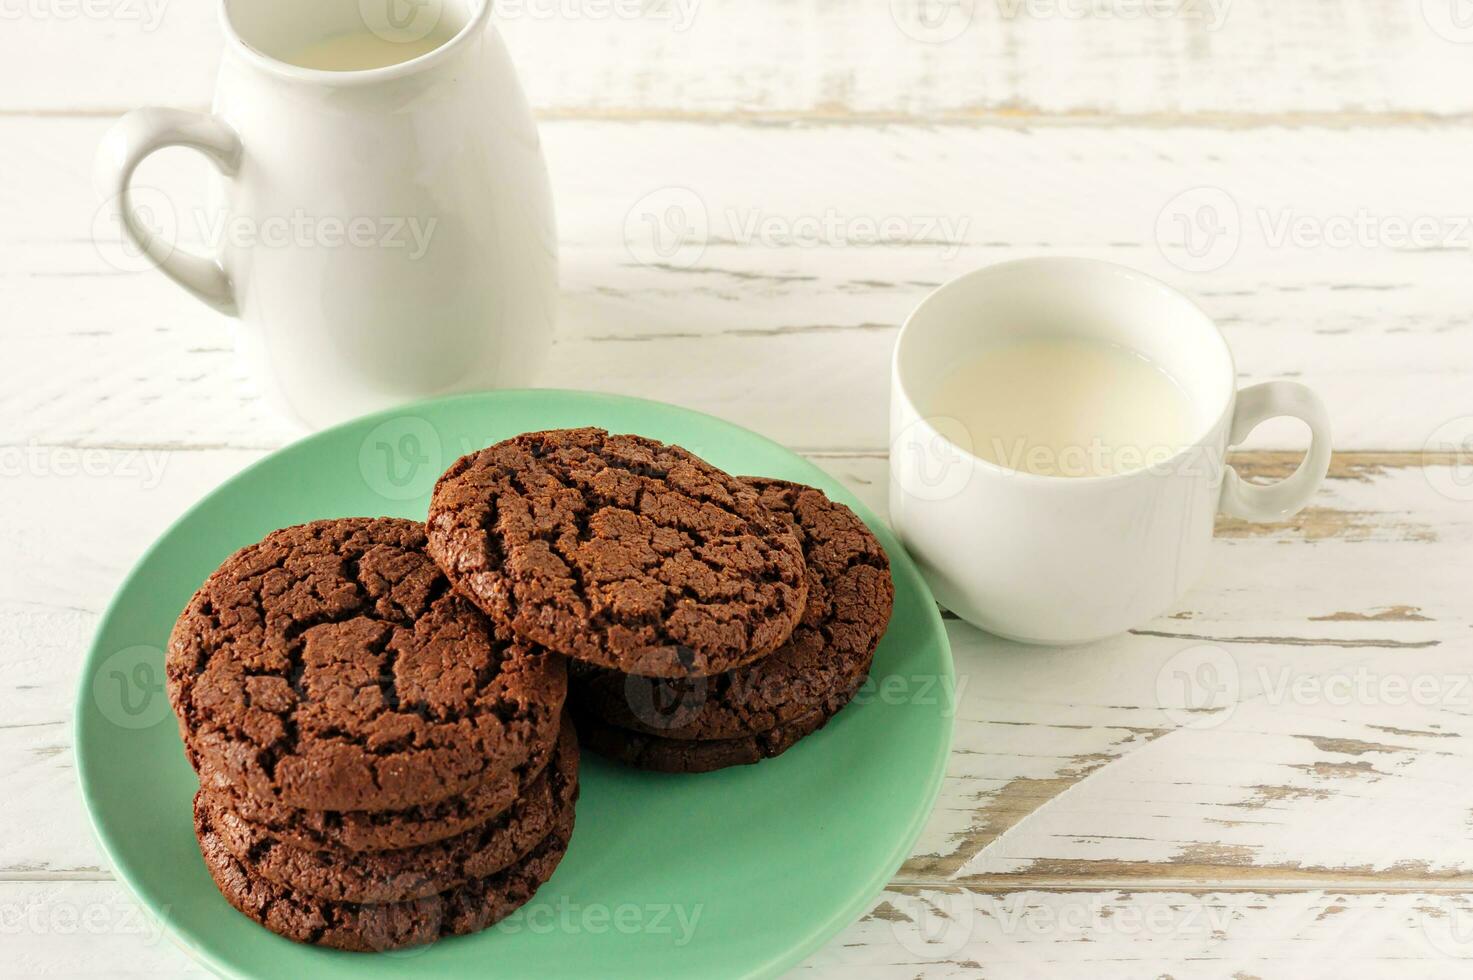 biscuits au chocolat pour le petit déjeuner avec un verre de lait sur une table en bois blanche. photo